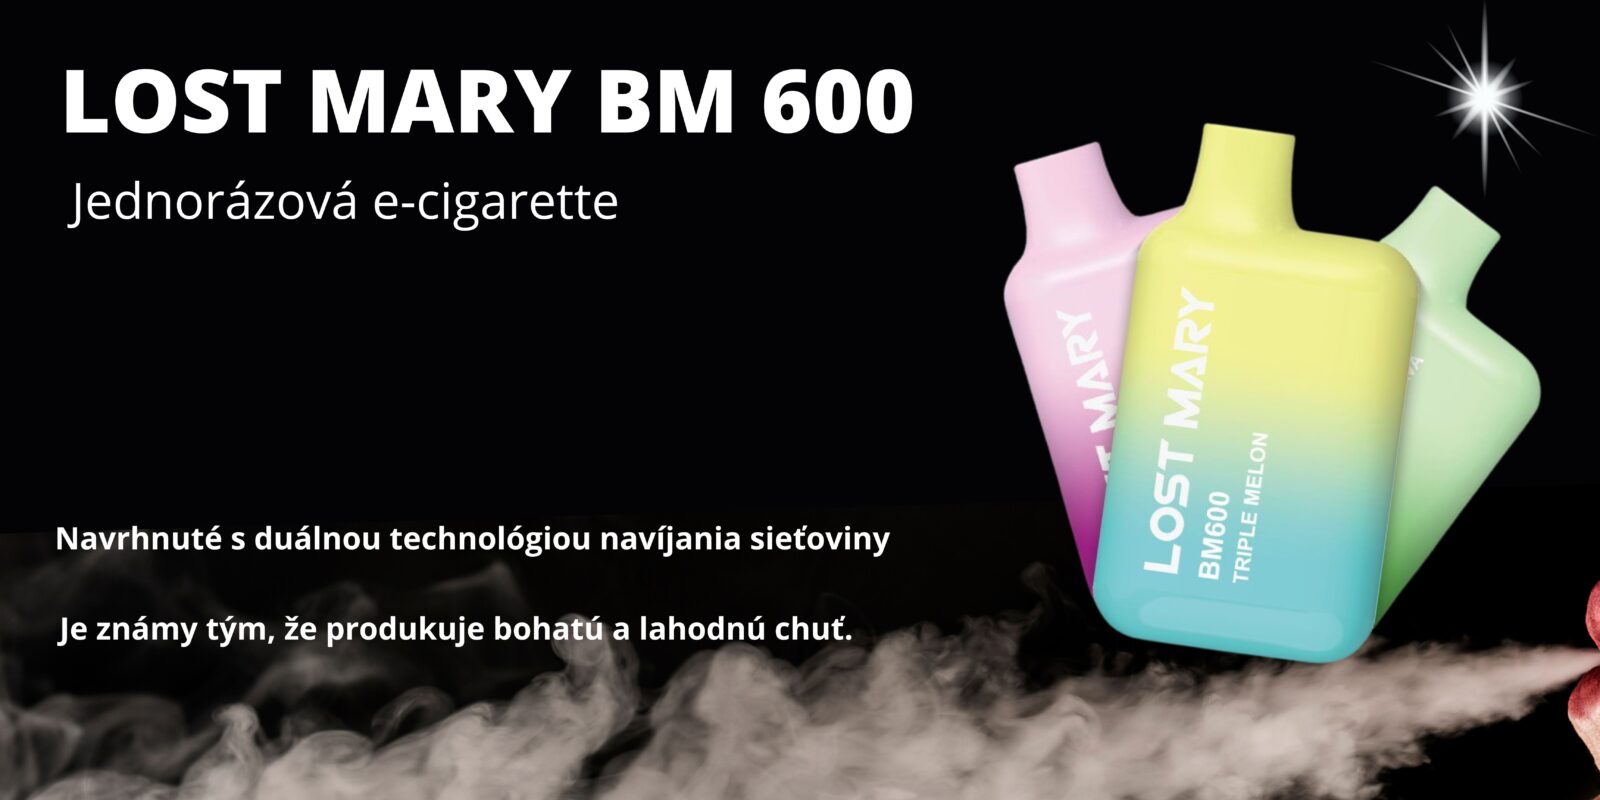 Lost Mary BM600 – Marybull Ice (Jednorazová e-cigareta) 20MG JEDNORAZOVÉ E-CIGARETY - XMANIA Ireland 16